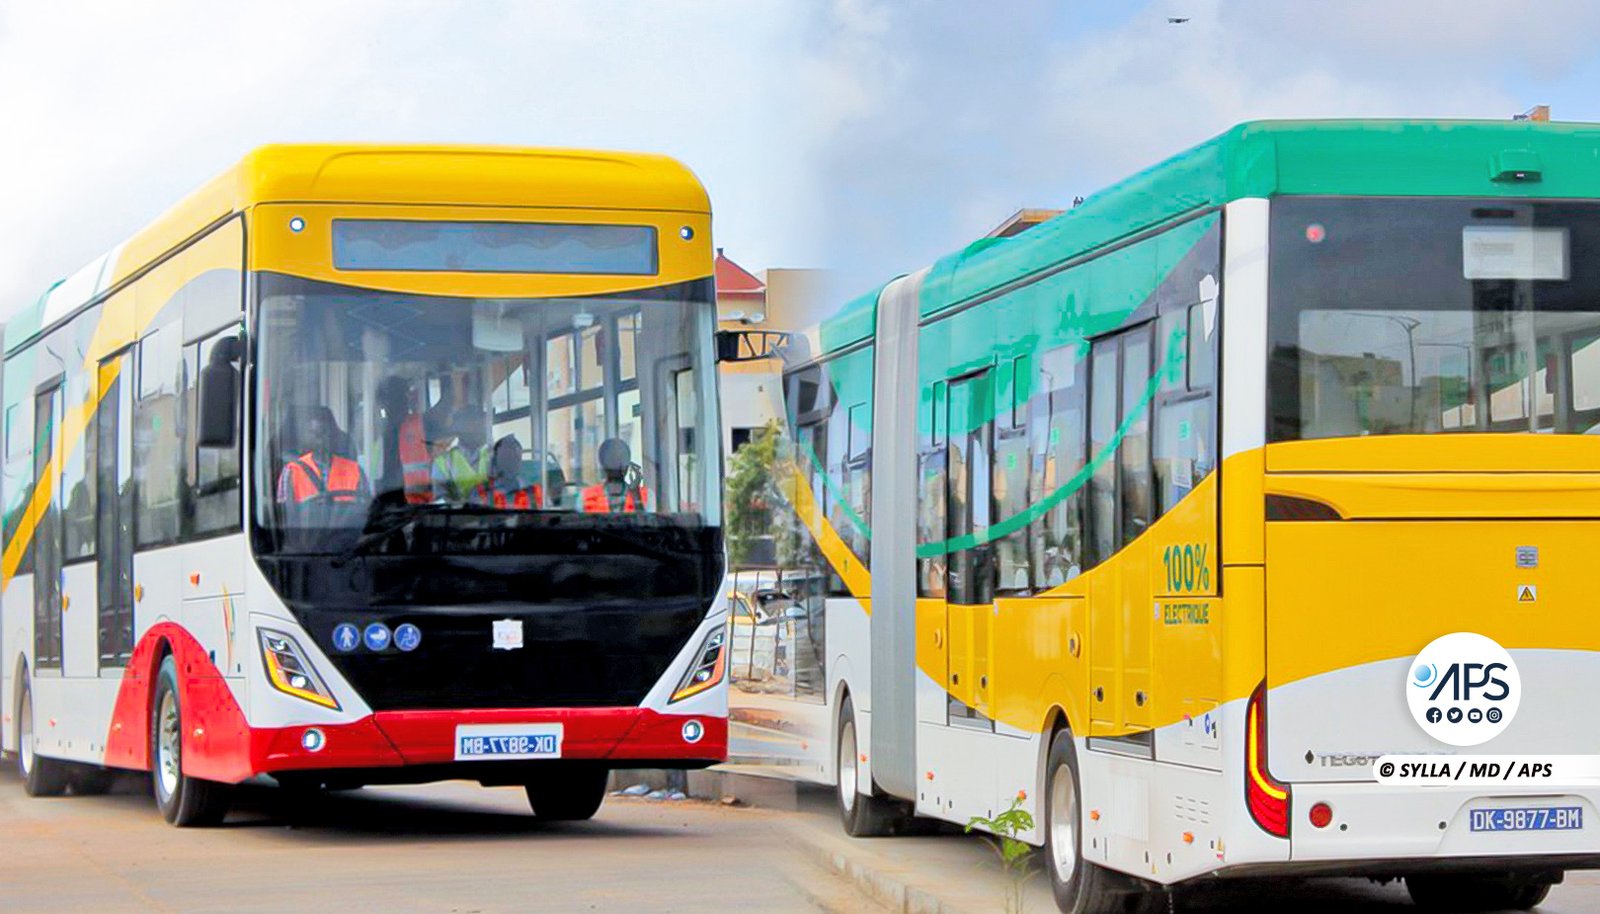 2 Photos Le projet BRT a Dakar enregistre des pertes estimees a plus de 5 milliards de FCFA suite a des violences 1